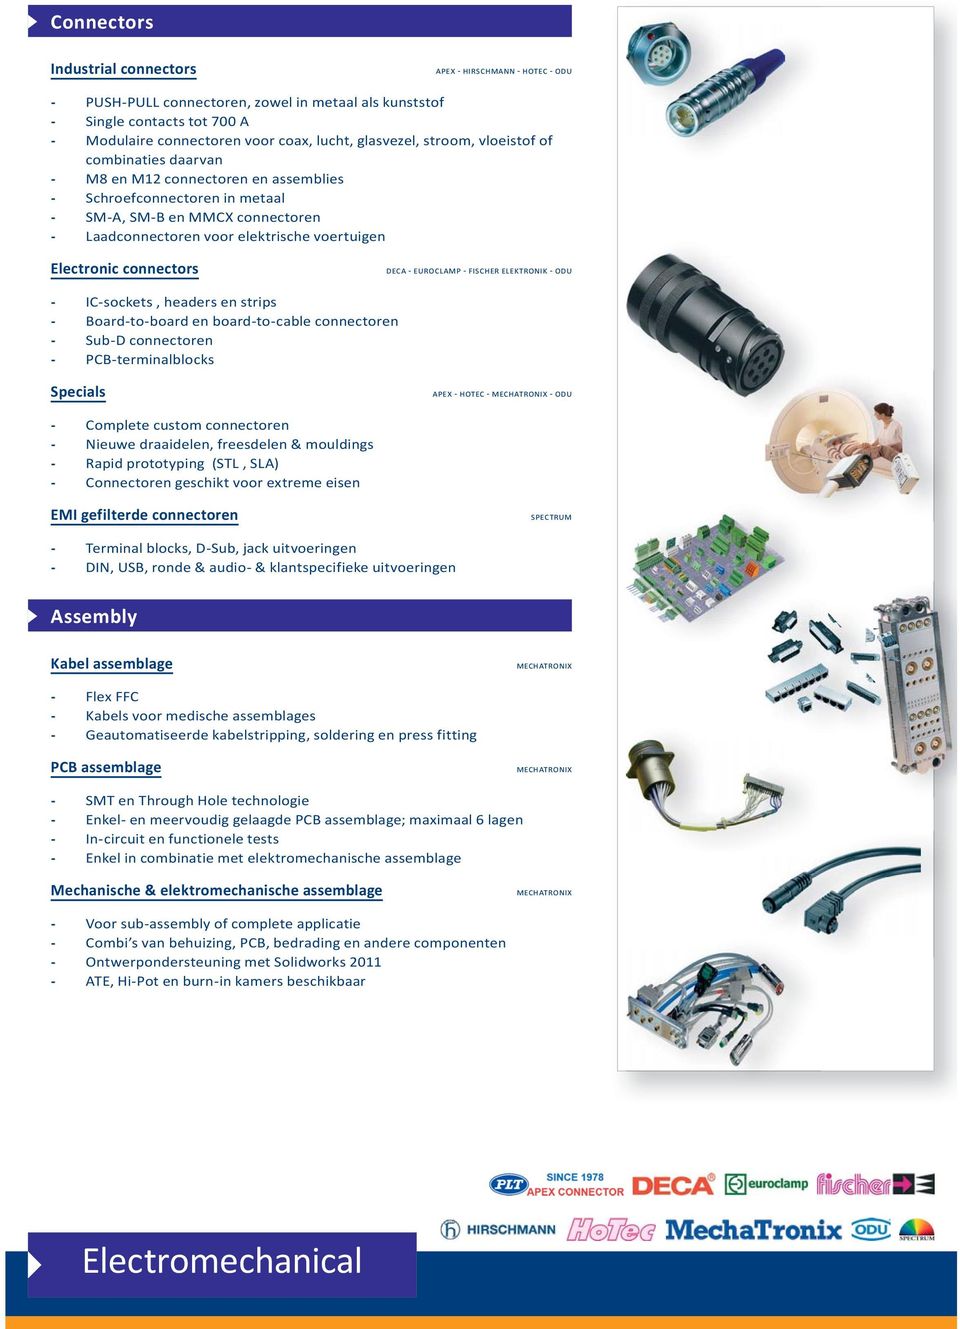 Terminal blocks, DSub, jack uitvoeringen DIN, USB, ronde & audio & klantspecifieke uitvoeringen Kabels voor medische assemblages Geautomatiseerde kabelstripping, soldering en press